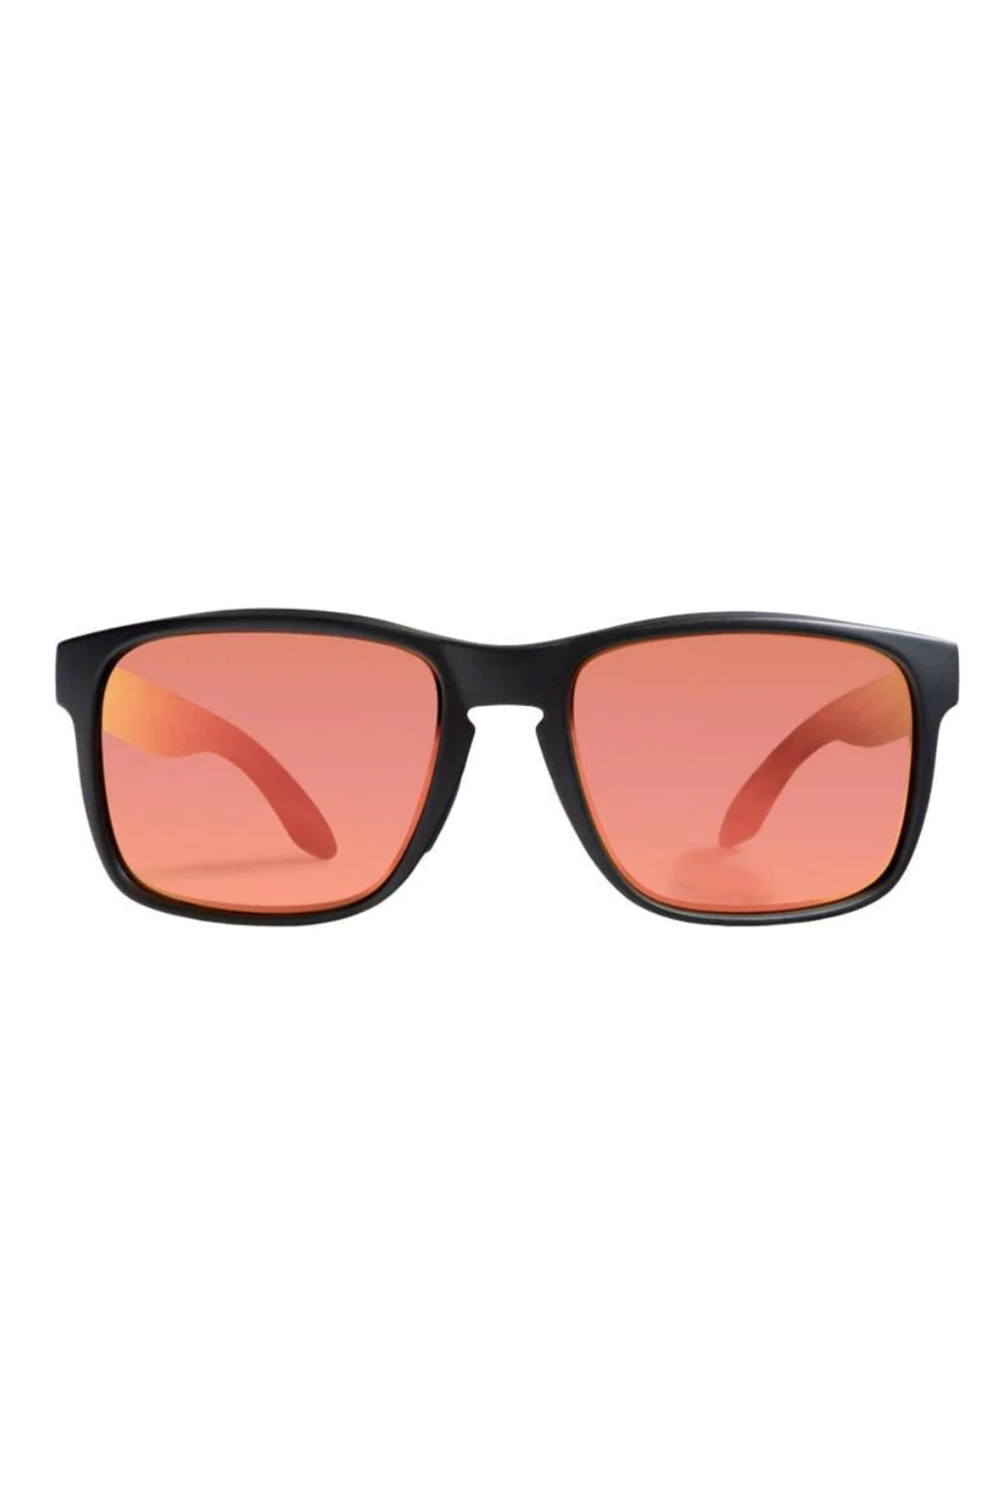 Rheos Sunglasses - Coopers Gunmetal Thermal